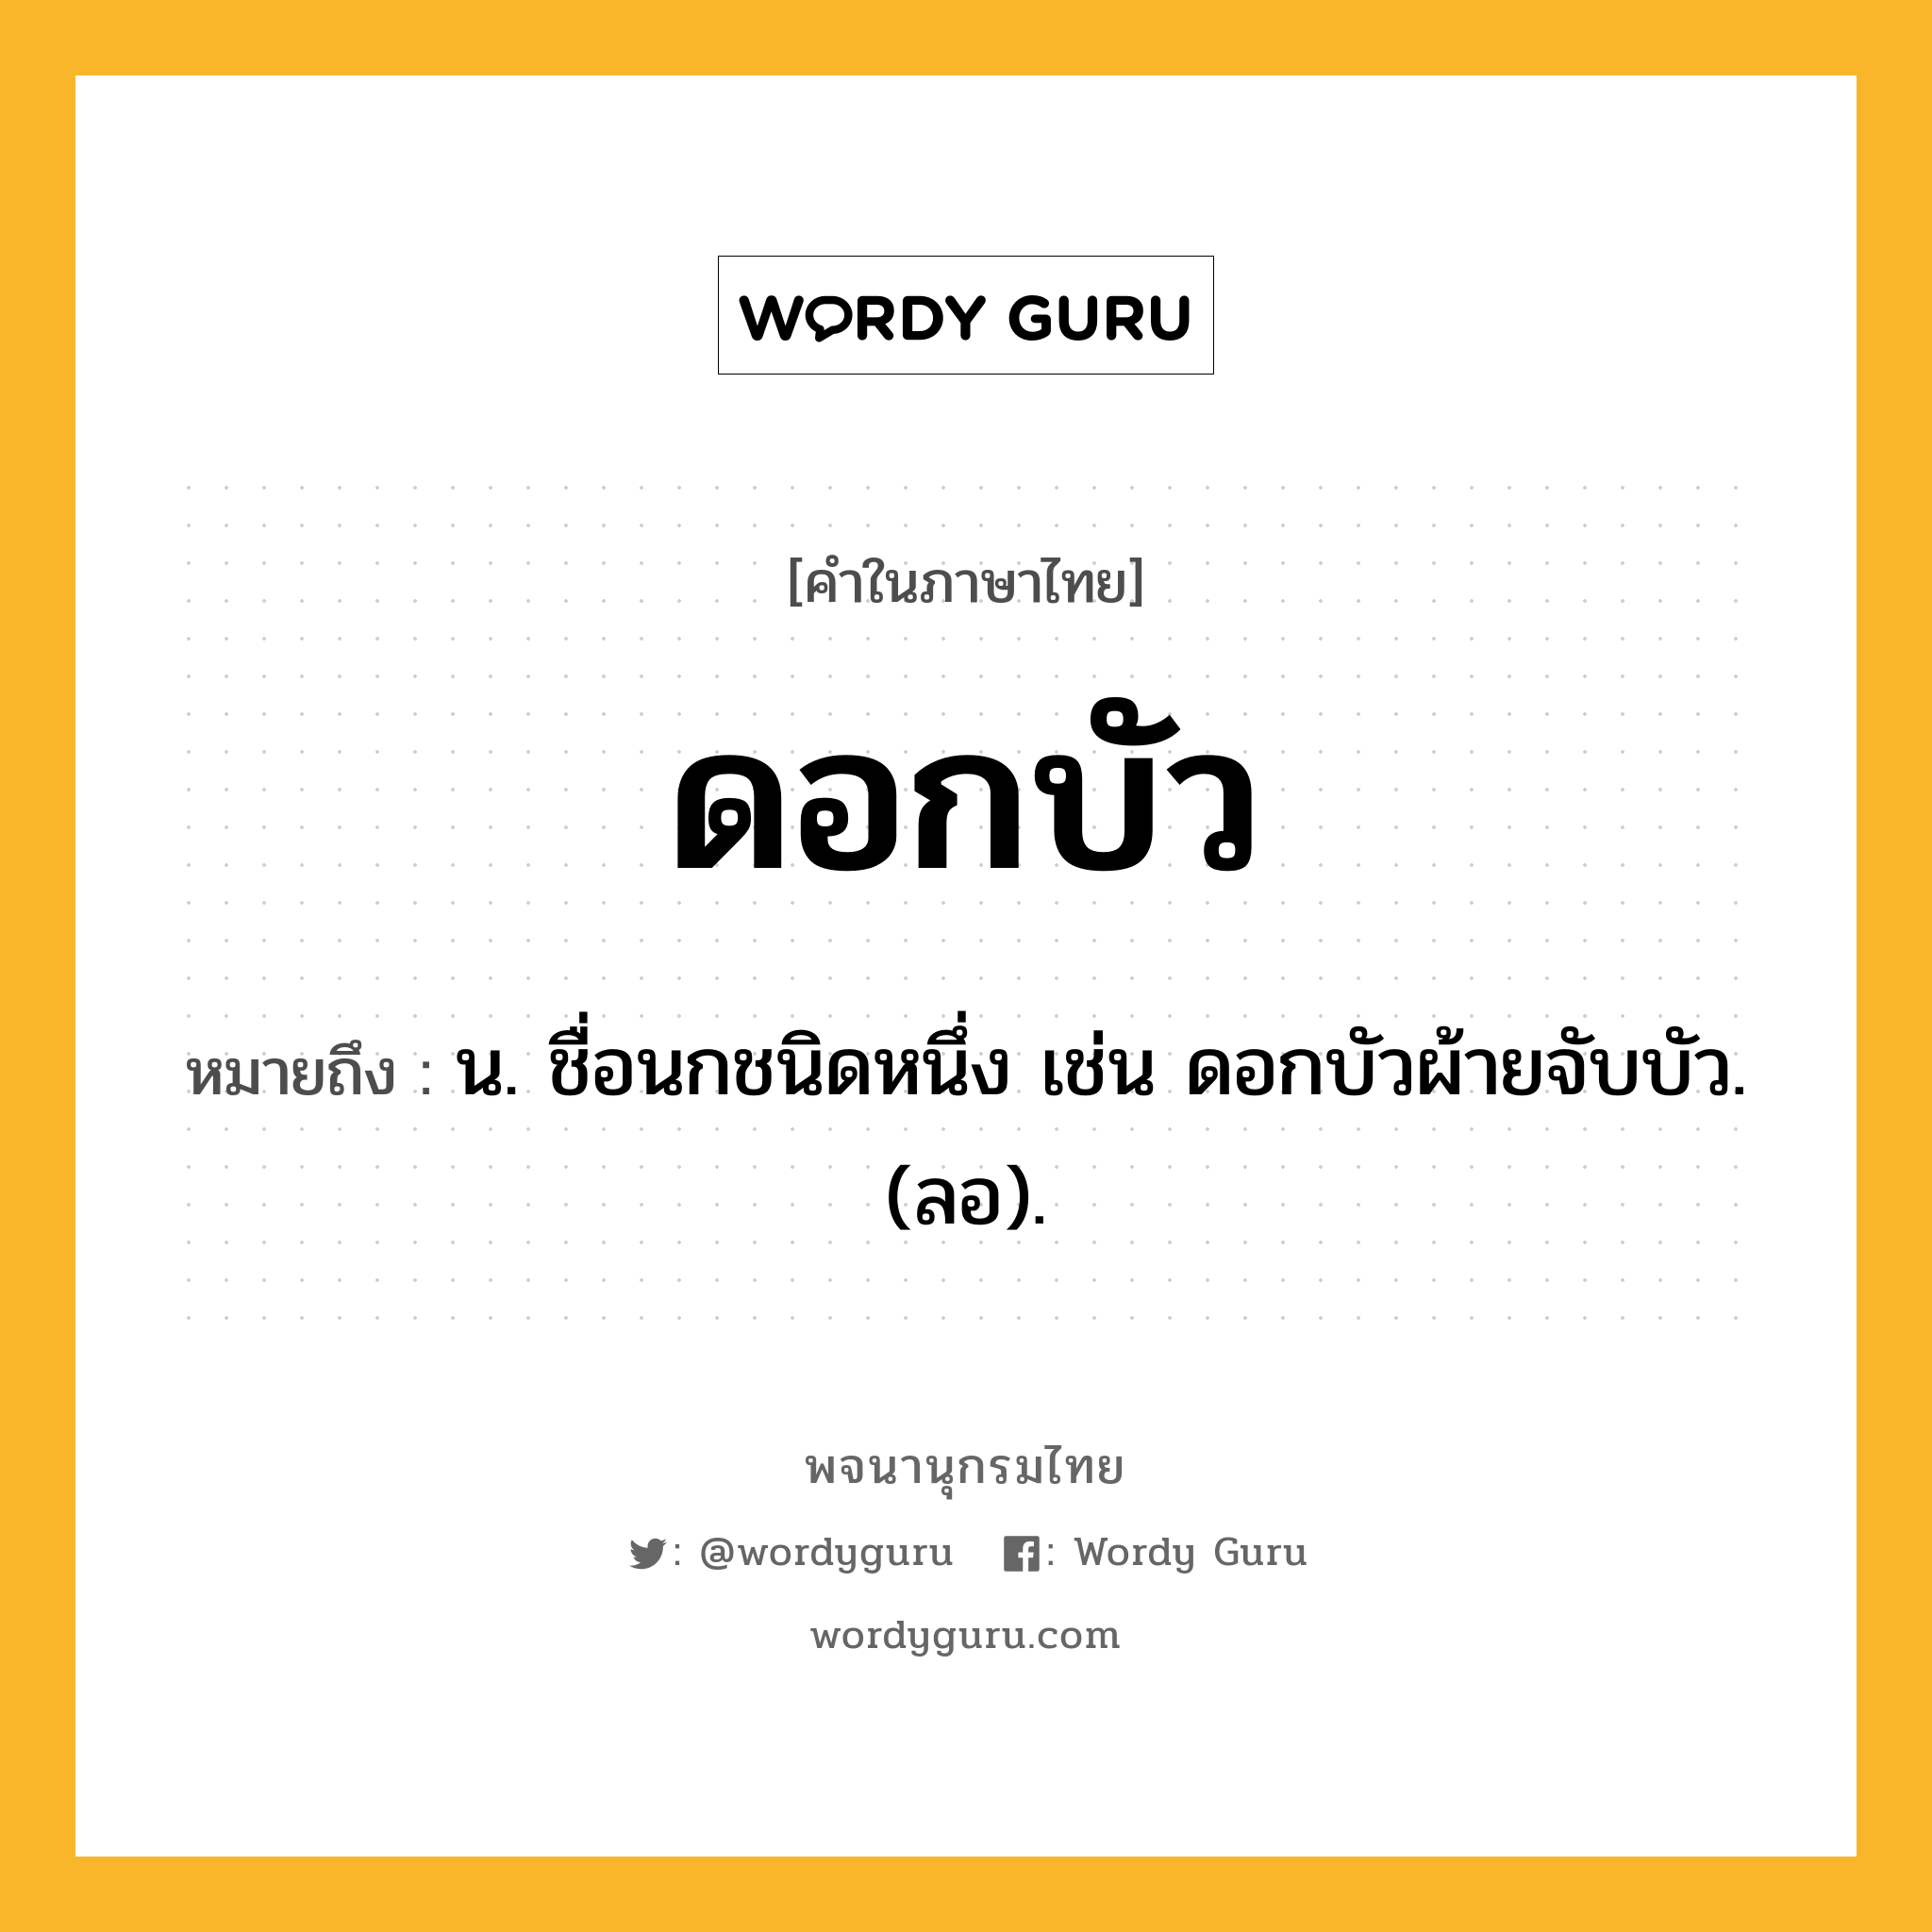 ดอกบัว หมายถึงอะไร?, คำในภาษาไทย ดอกบัว หมายถึง น. ชื่อนกชนิดหนึ่ง เช่น ดอกบัวผ้ายจับบัว. (ลอ).